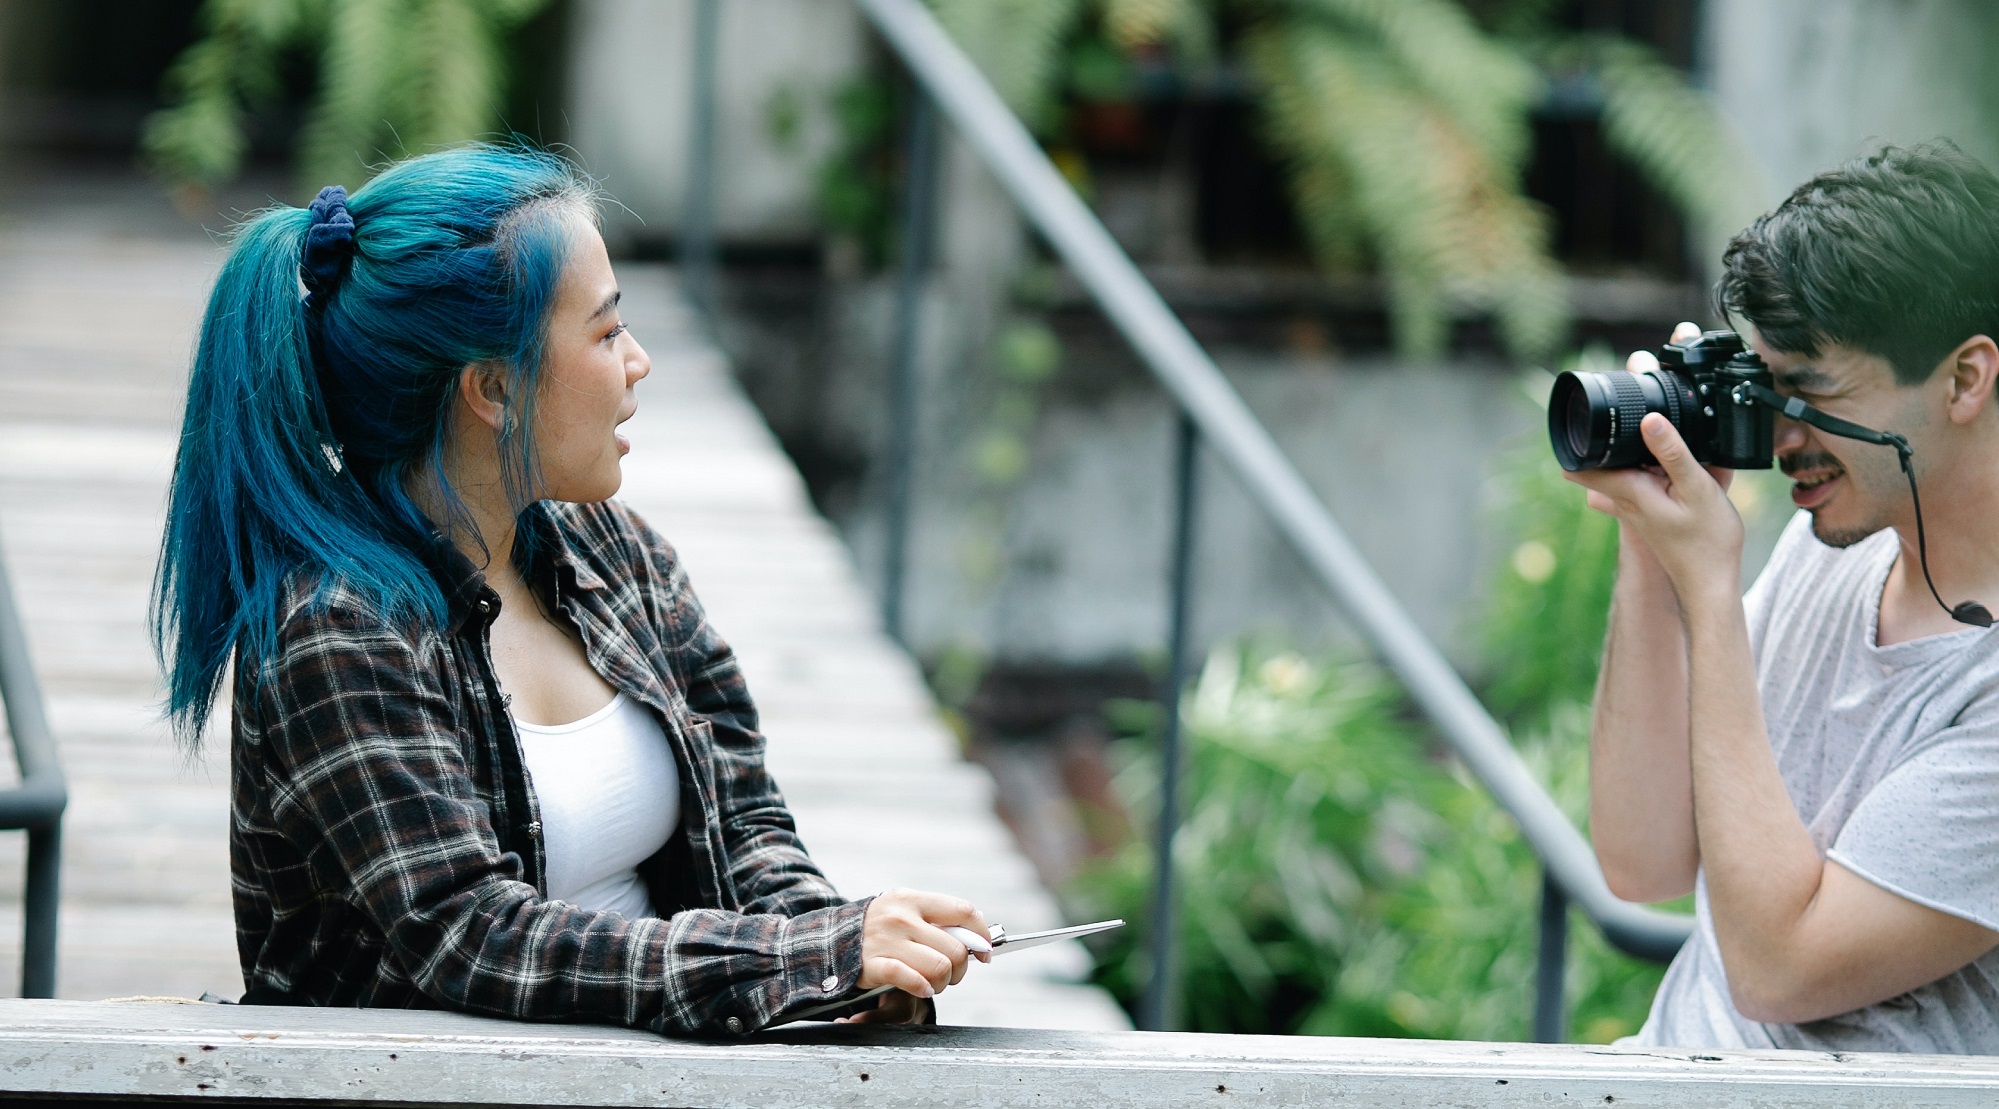 Ein junger Mensch fotografiert ein blauhaariges Mädchen.